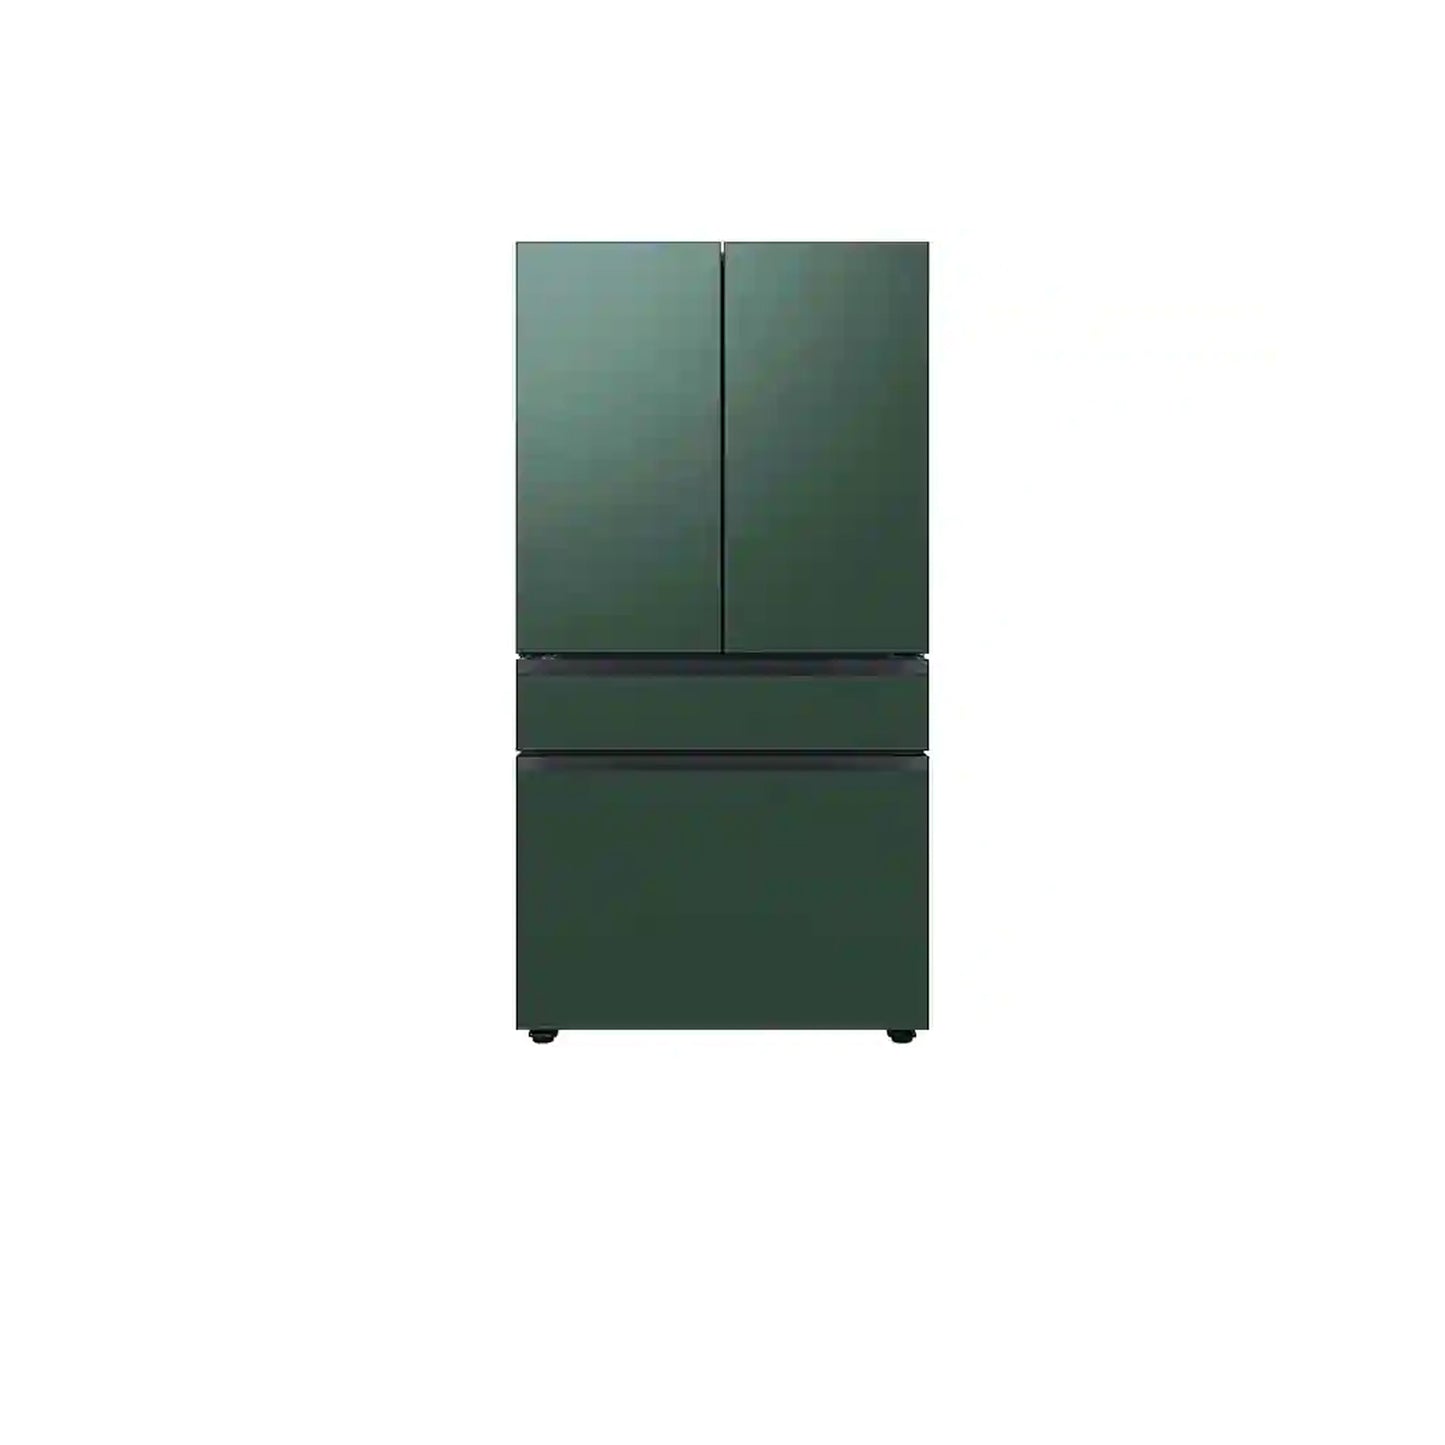 ثلاجة مخصصة بباب فرنسي بأربعة أبواب (23 قدمًا مكعبًا) مع ألوان لوحة الباب قابلة للتخصيص ومركز المشروبات™ بزجاج رمادي غير لامع. 